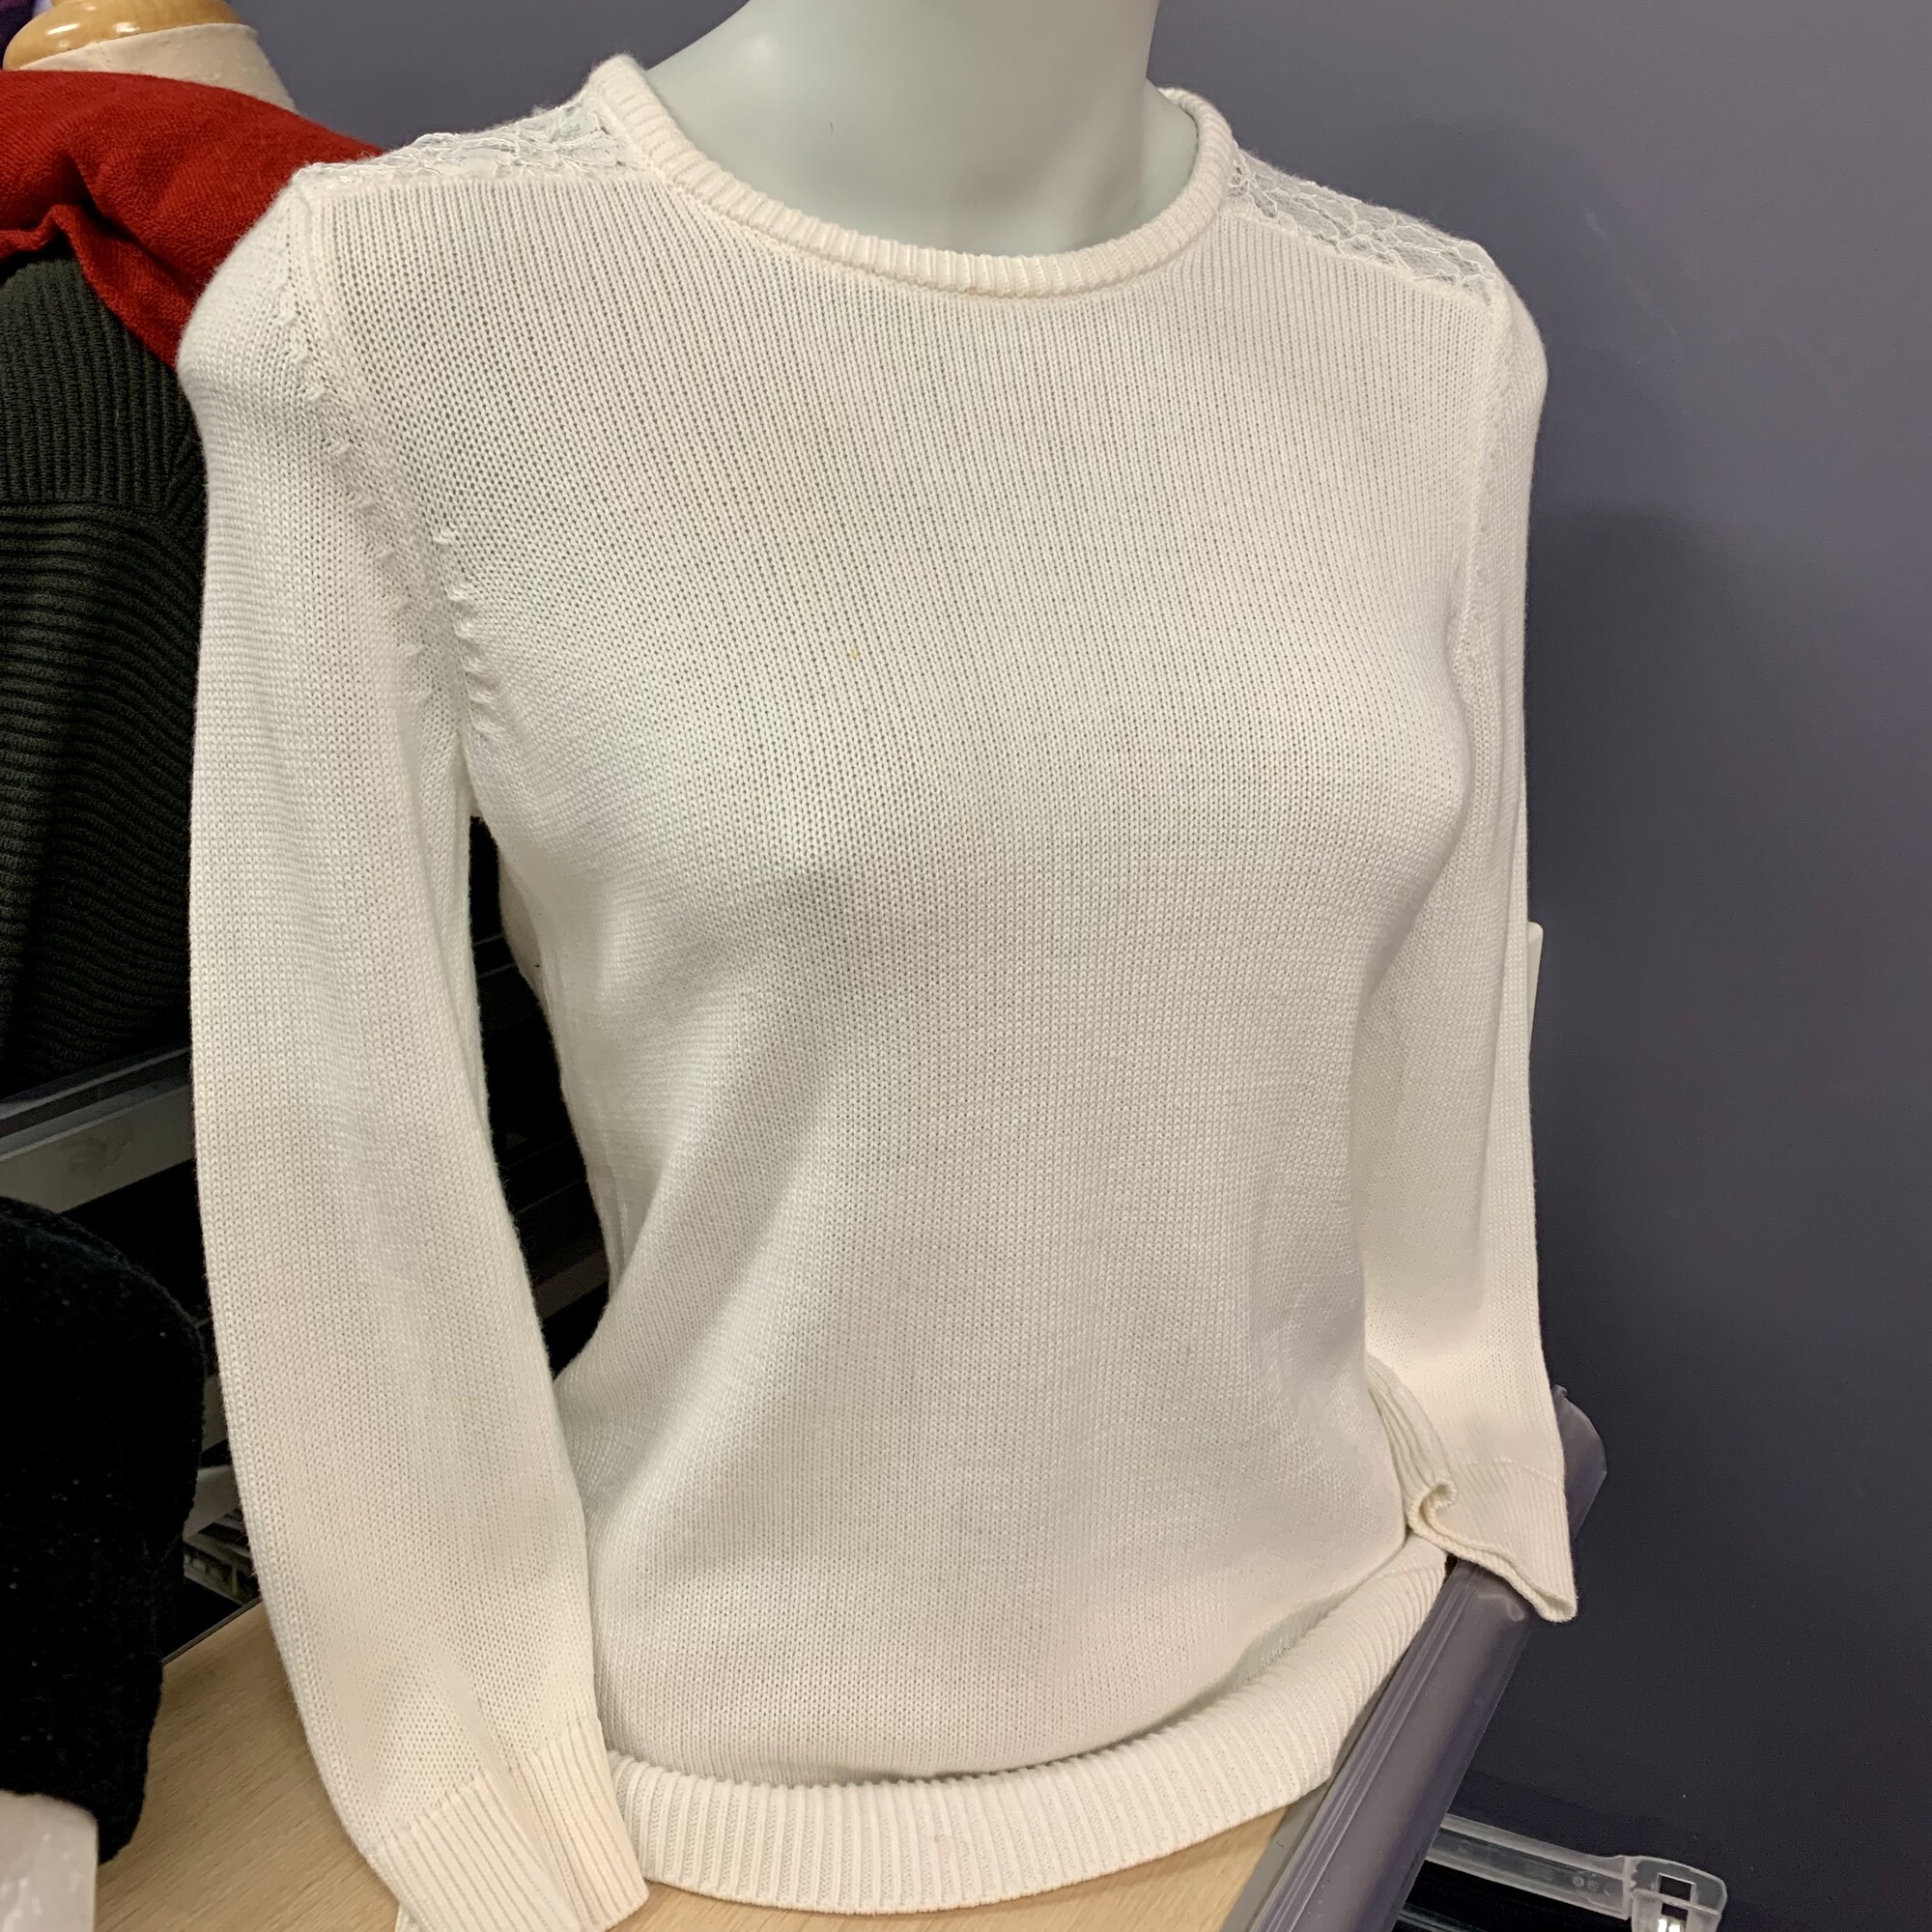 Ralp Lauren Lace Shoulder sweater,
Colour: Pearl,
Size: Medium Petite